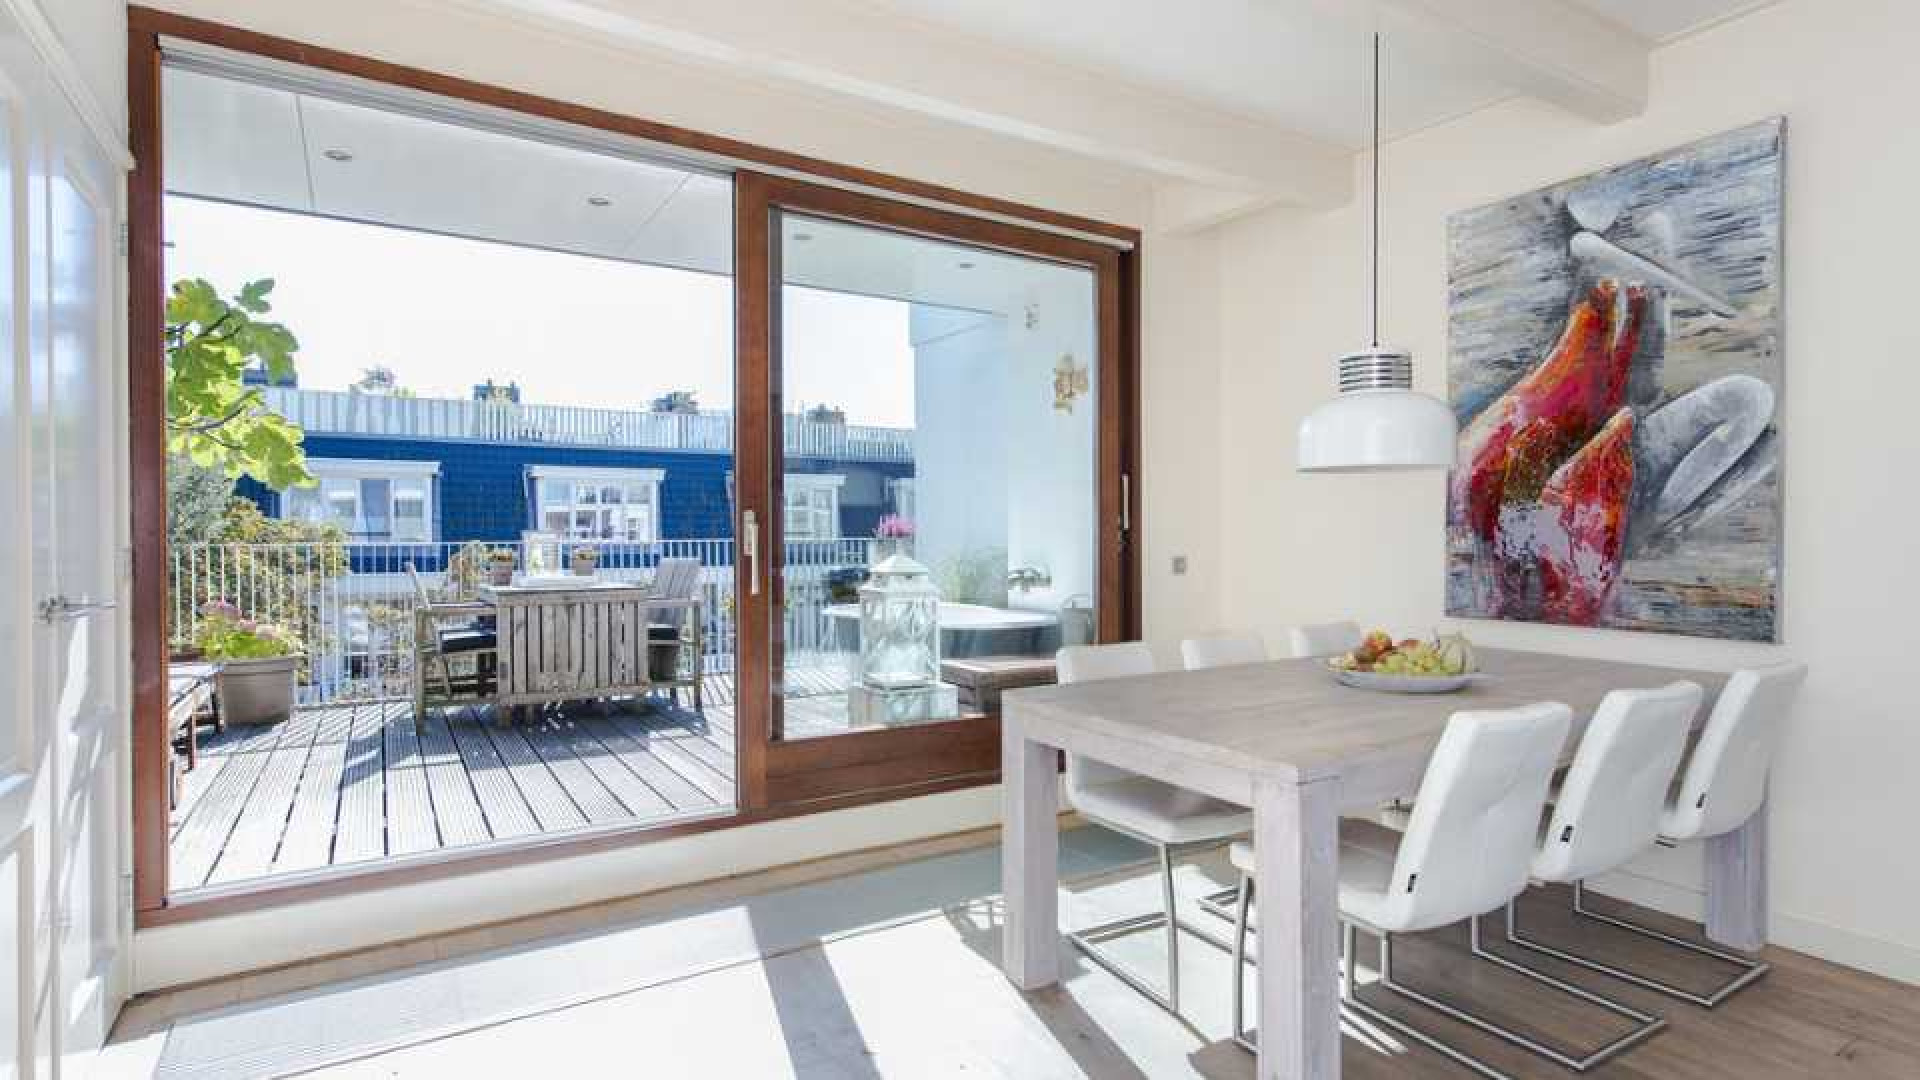 Armin van Buuren koopt luxe dubbel bovenhuis in Amsterdam Oud-West. Zie foto's 2